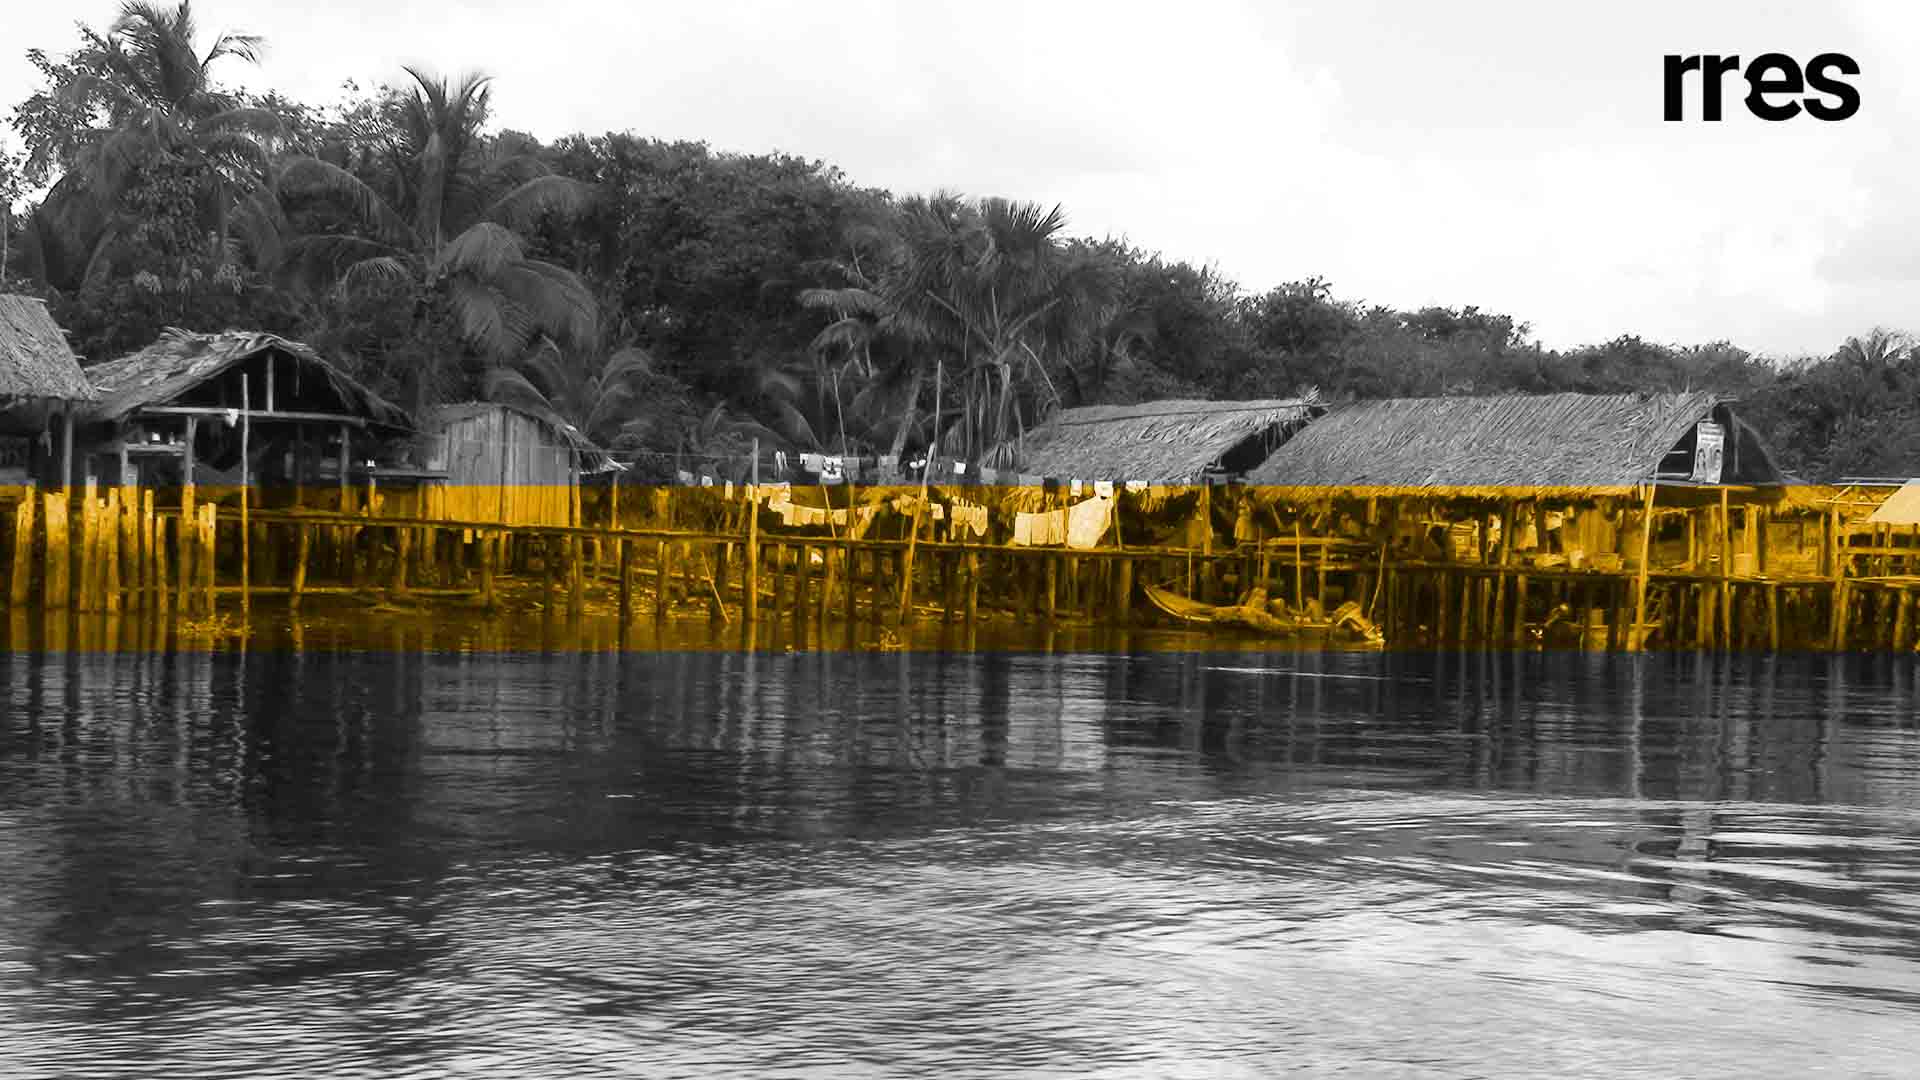 En peligro miles de personas por las crecidas del río Orinoco, por Rogelio Rodríguez